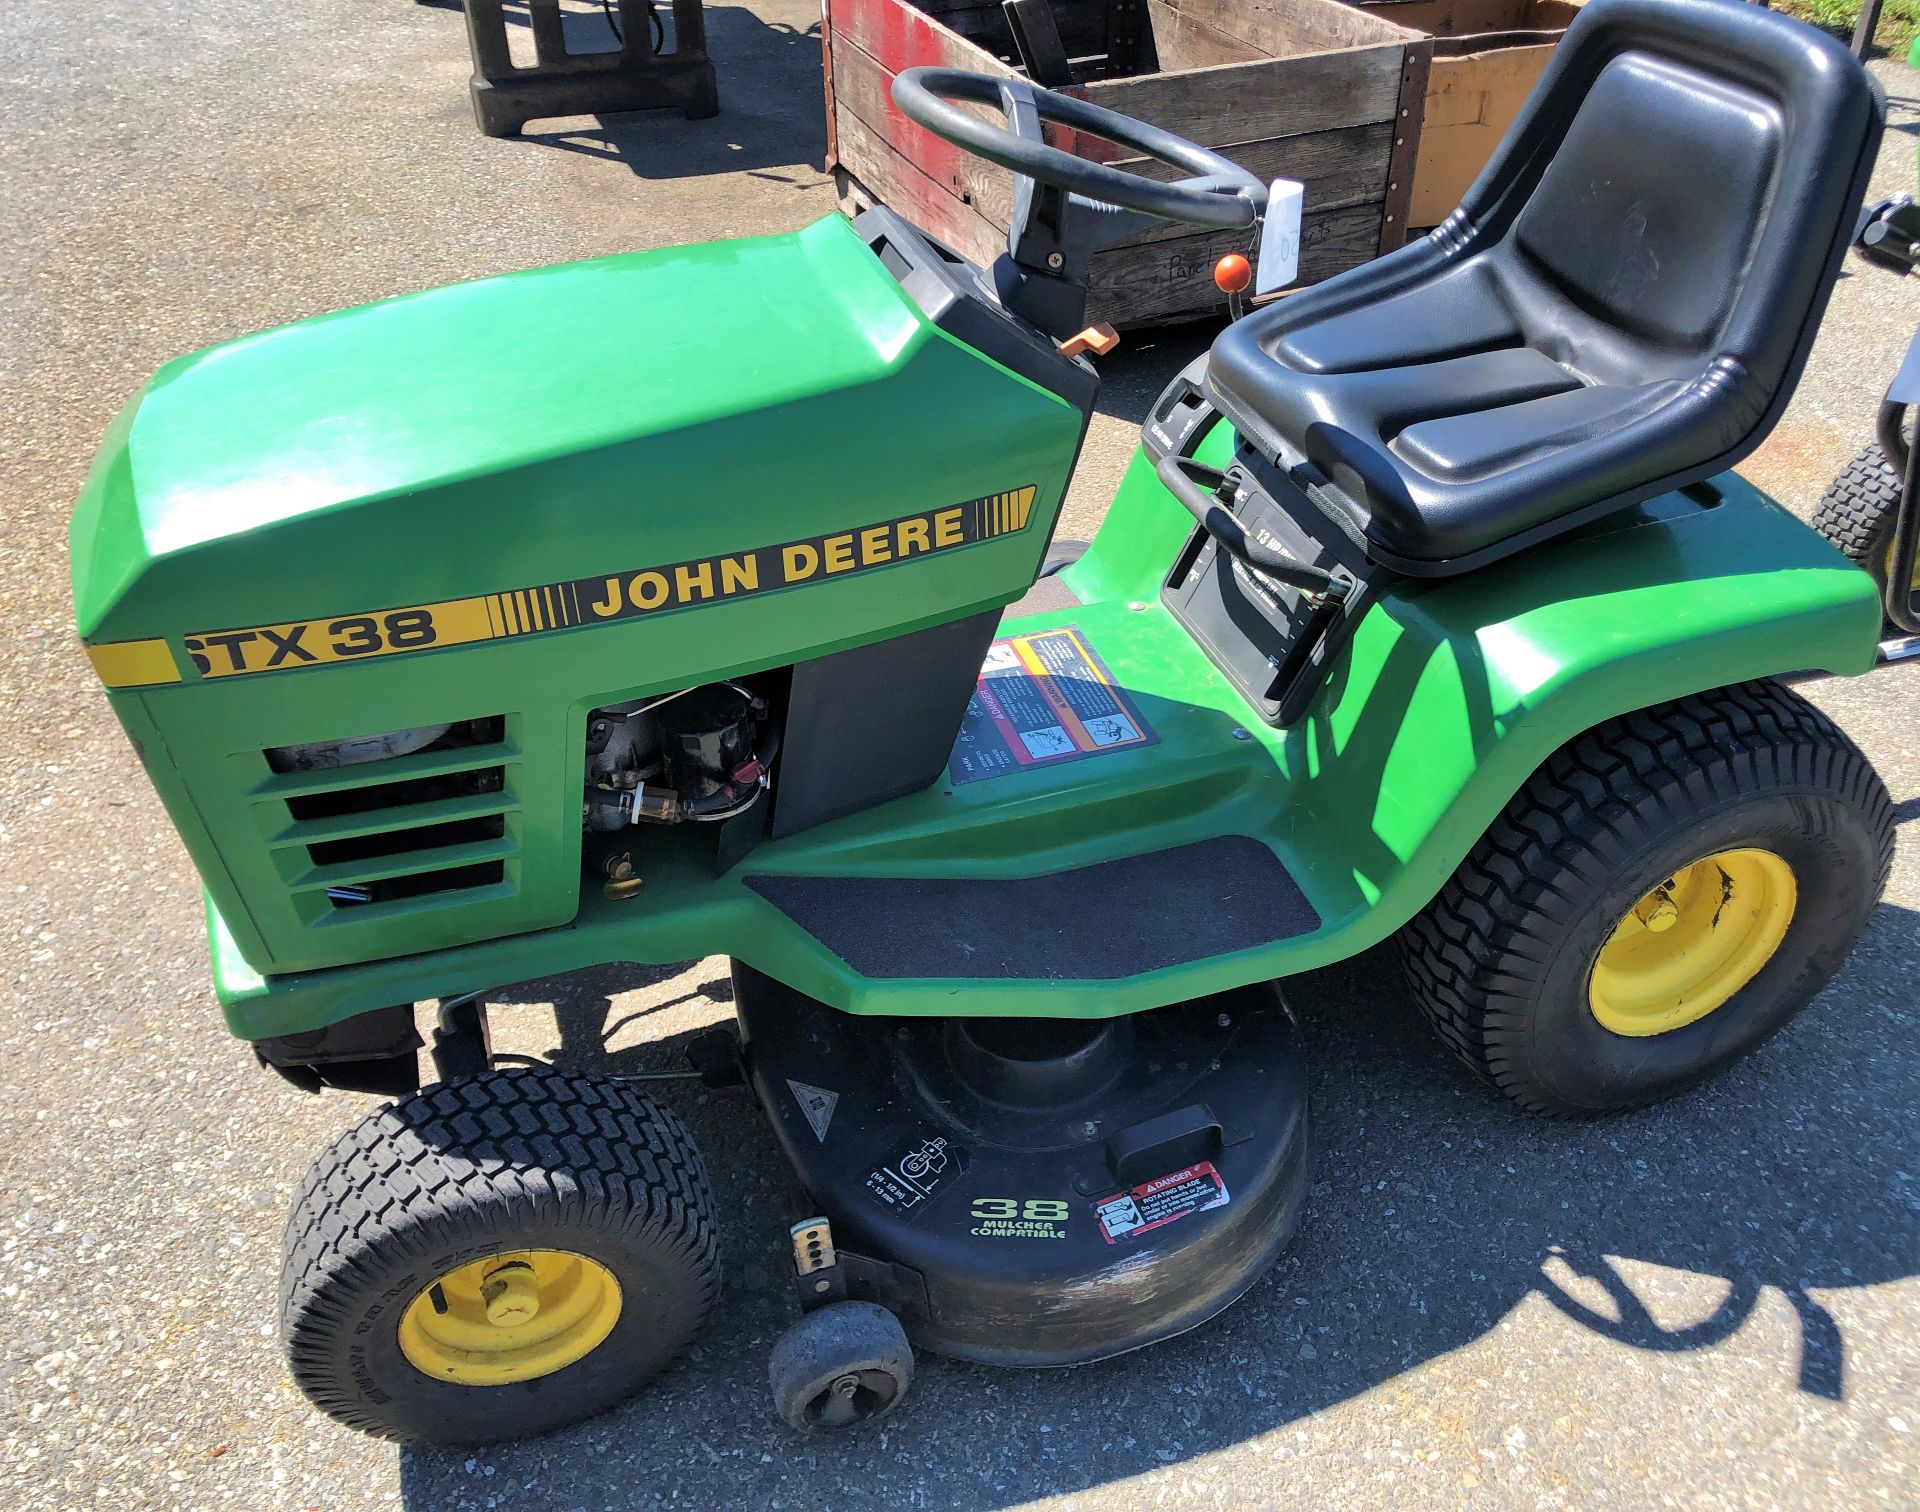 John Deere STX 38 Lawn Mower w/38" deck